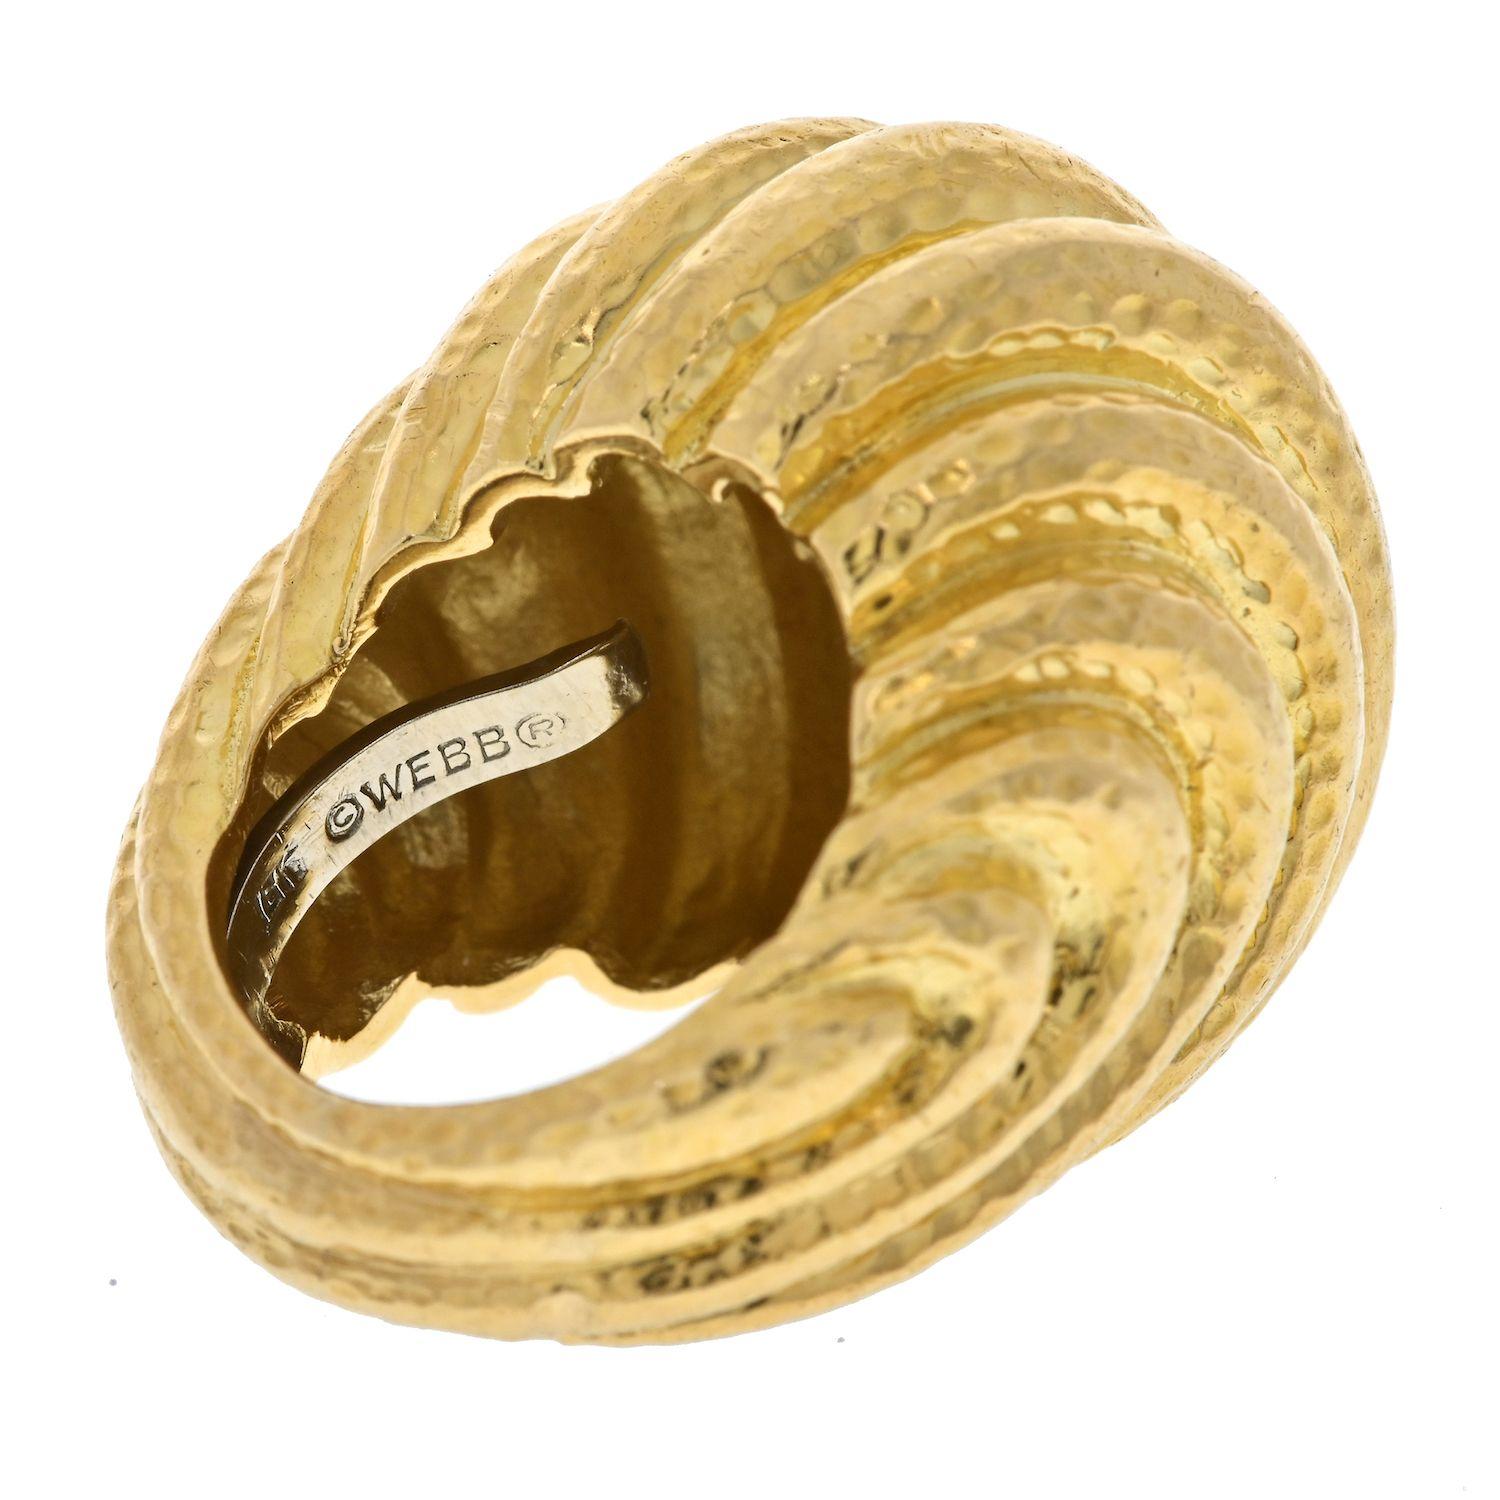 David Webb 18K Gelbgold gehämmert gewölbt geriffelt Stil Ring.
Kannelierter Kuppel-Cocktailring aus gehämmertem 18-karätigem Gelbgold, signiert 